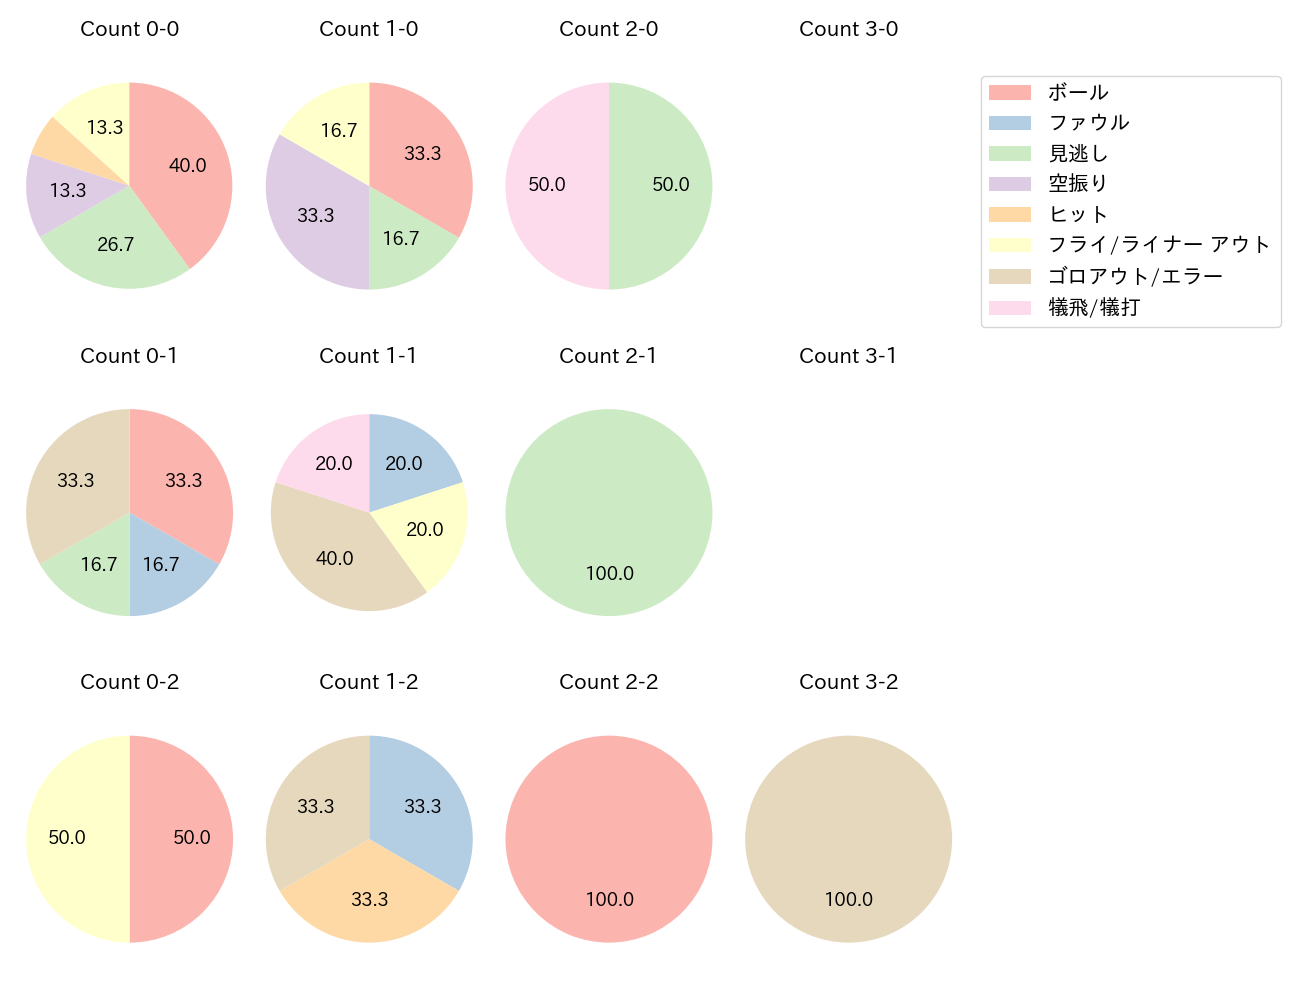 加藤 翔平の球数分布(2021年5月)